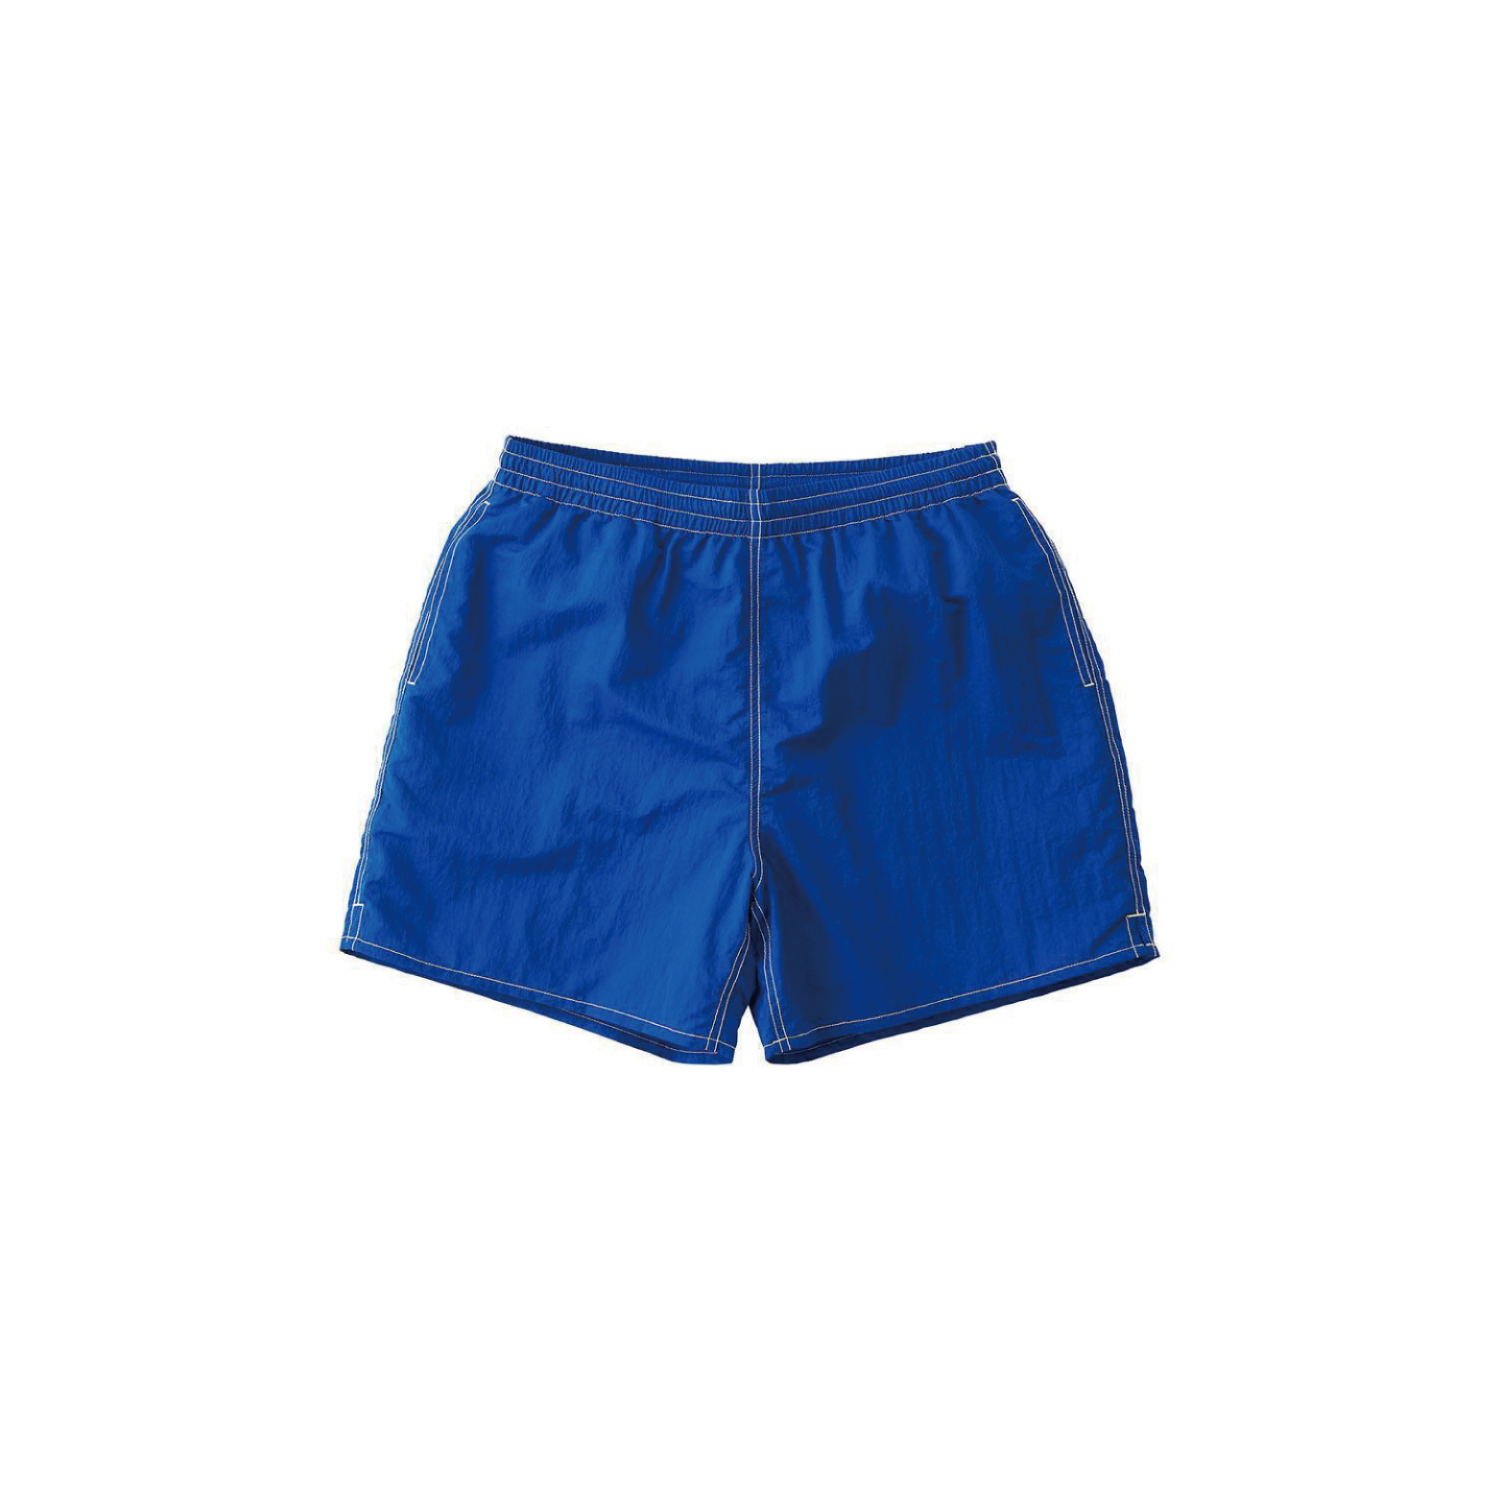 Drift Swim Shorts - Royal Blue, 그라미치 스윔 쇼츠